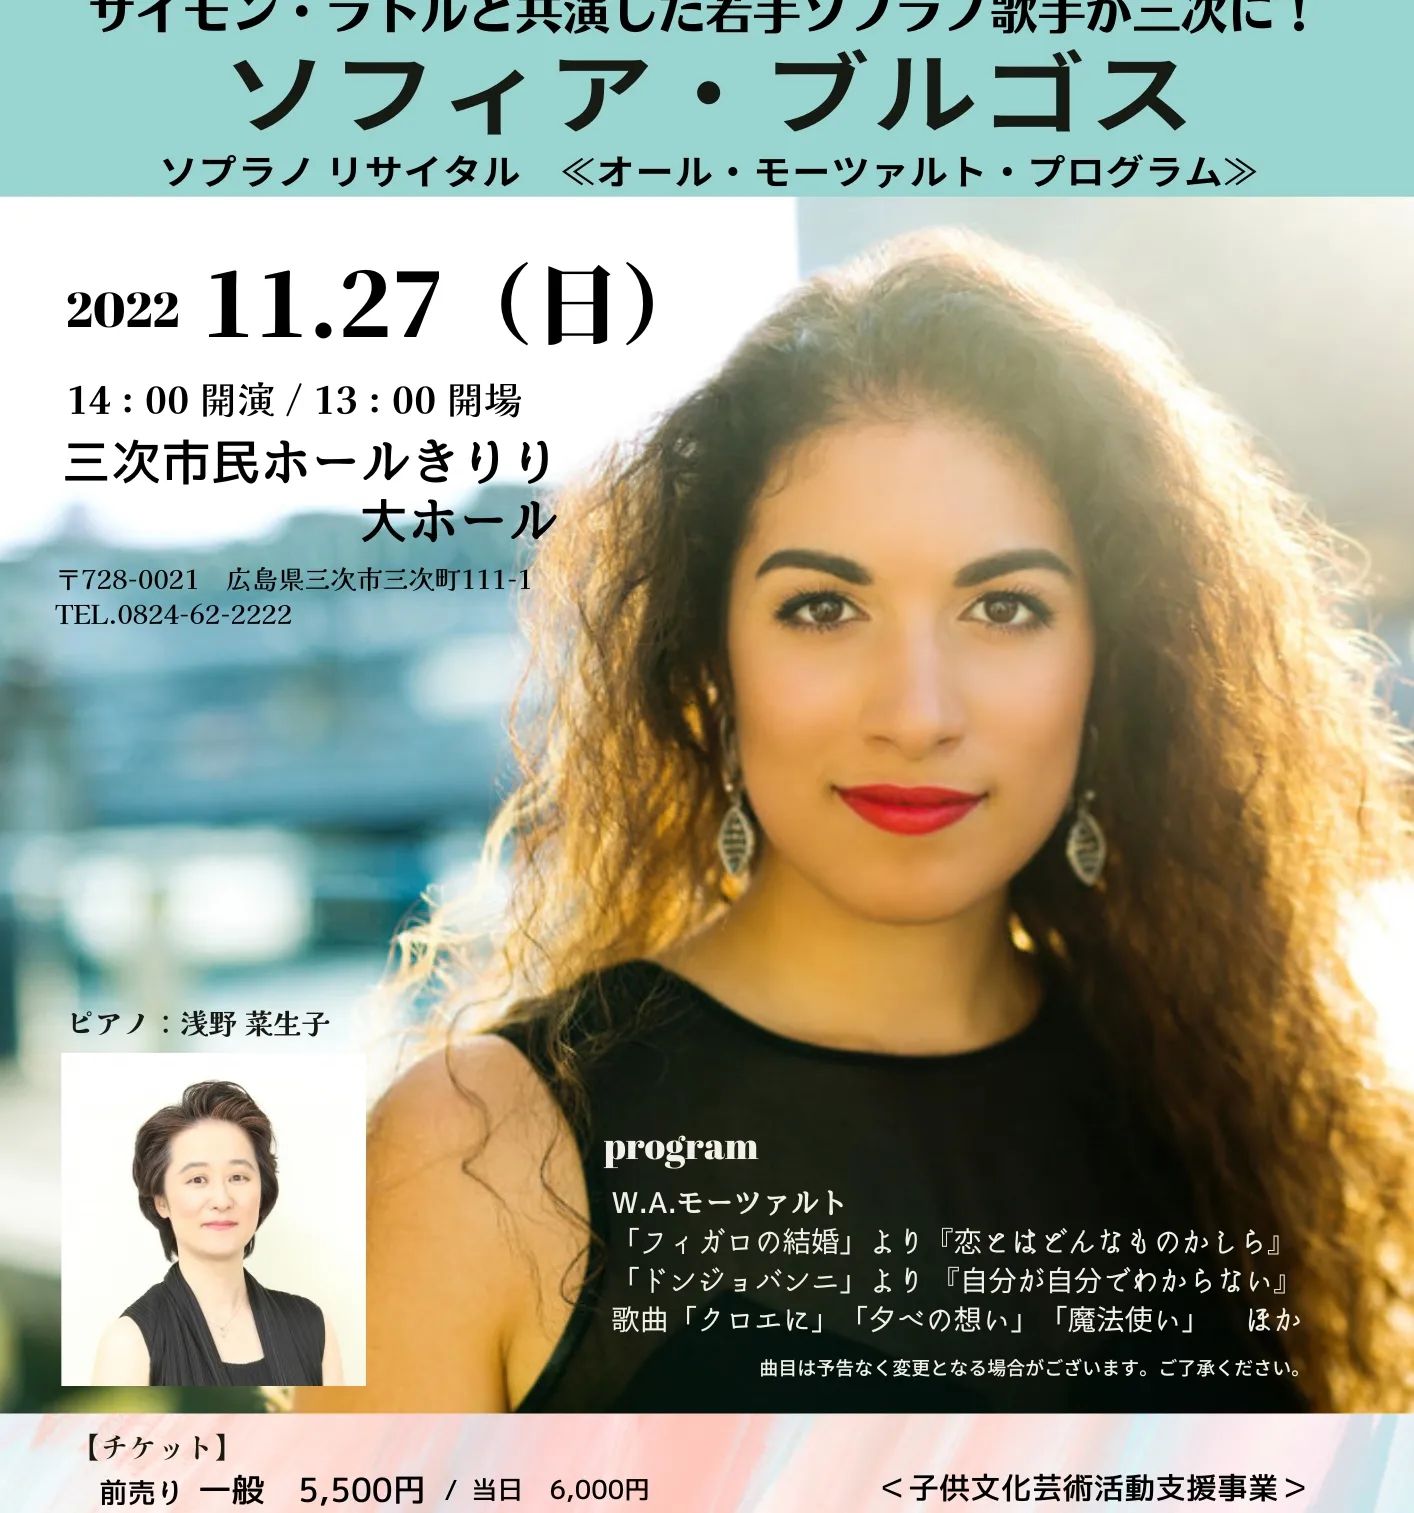 まもなく来日
ソフィア・ブルゴス
コンサートツアーは広島の三次からスタート。
チケット申し込みはこちらから
https://myticketnavi.com/event/detail/id/1260120903